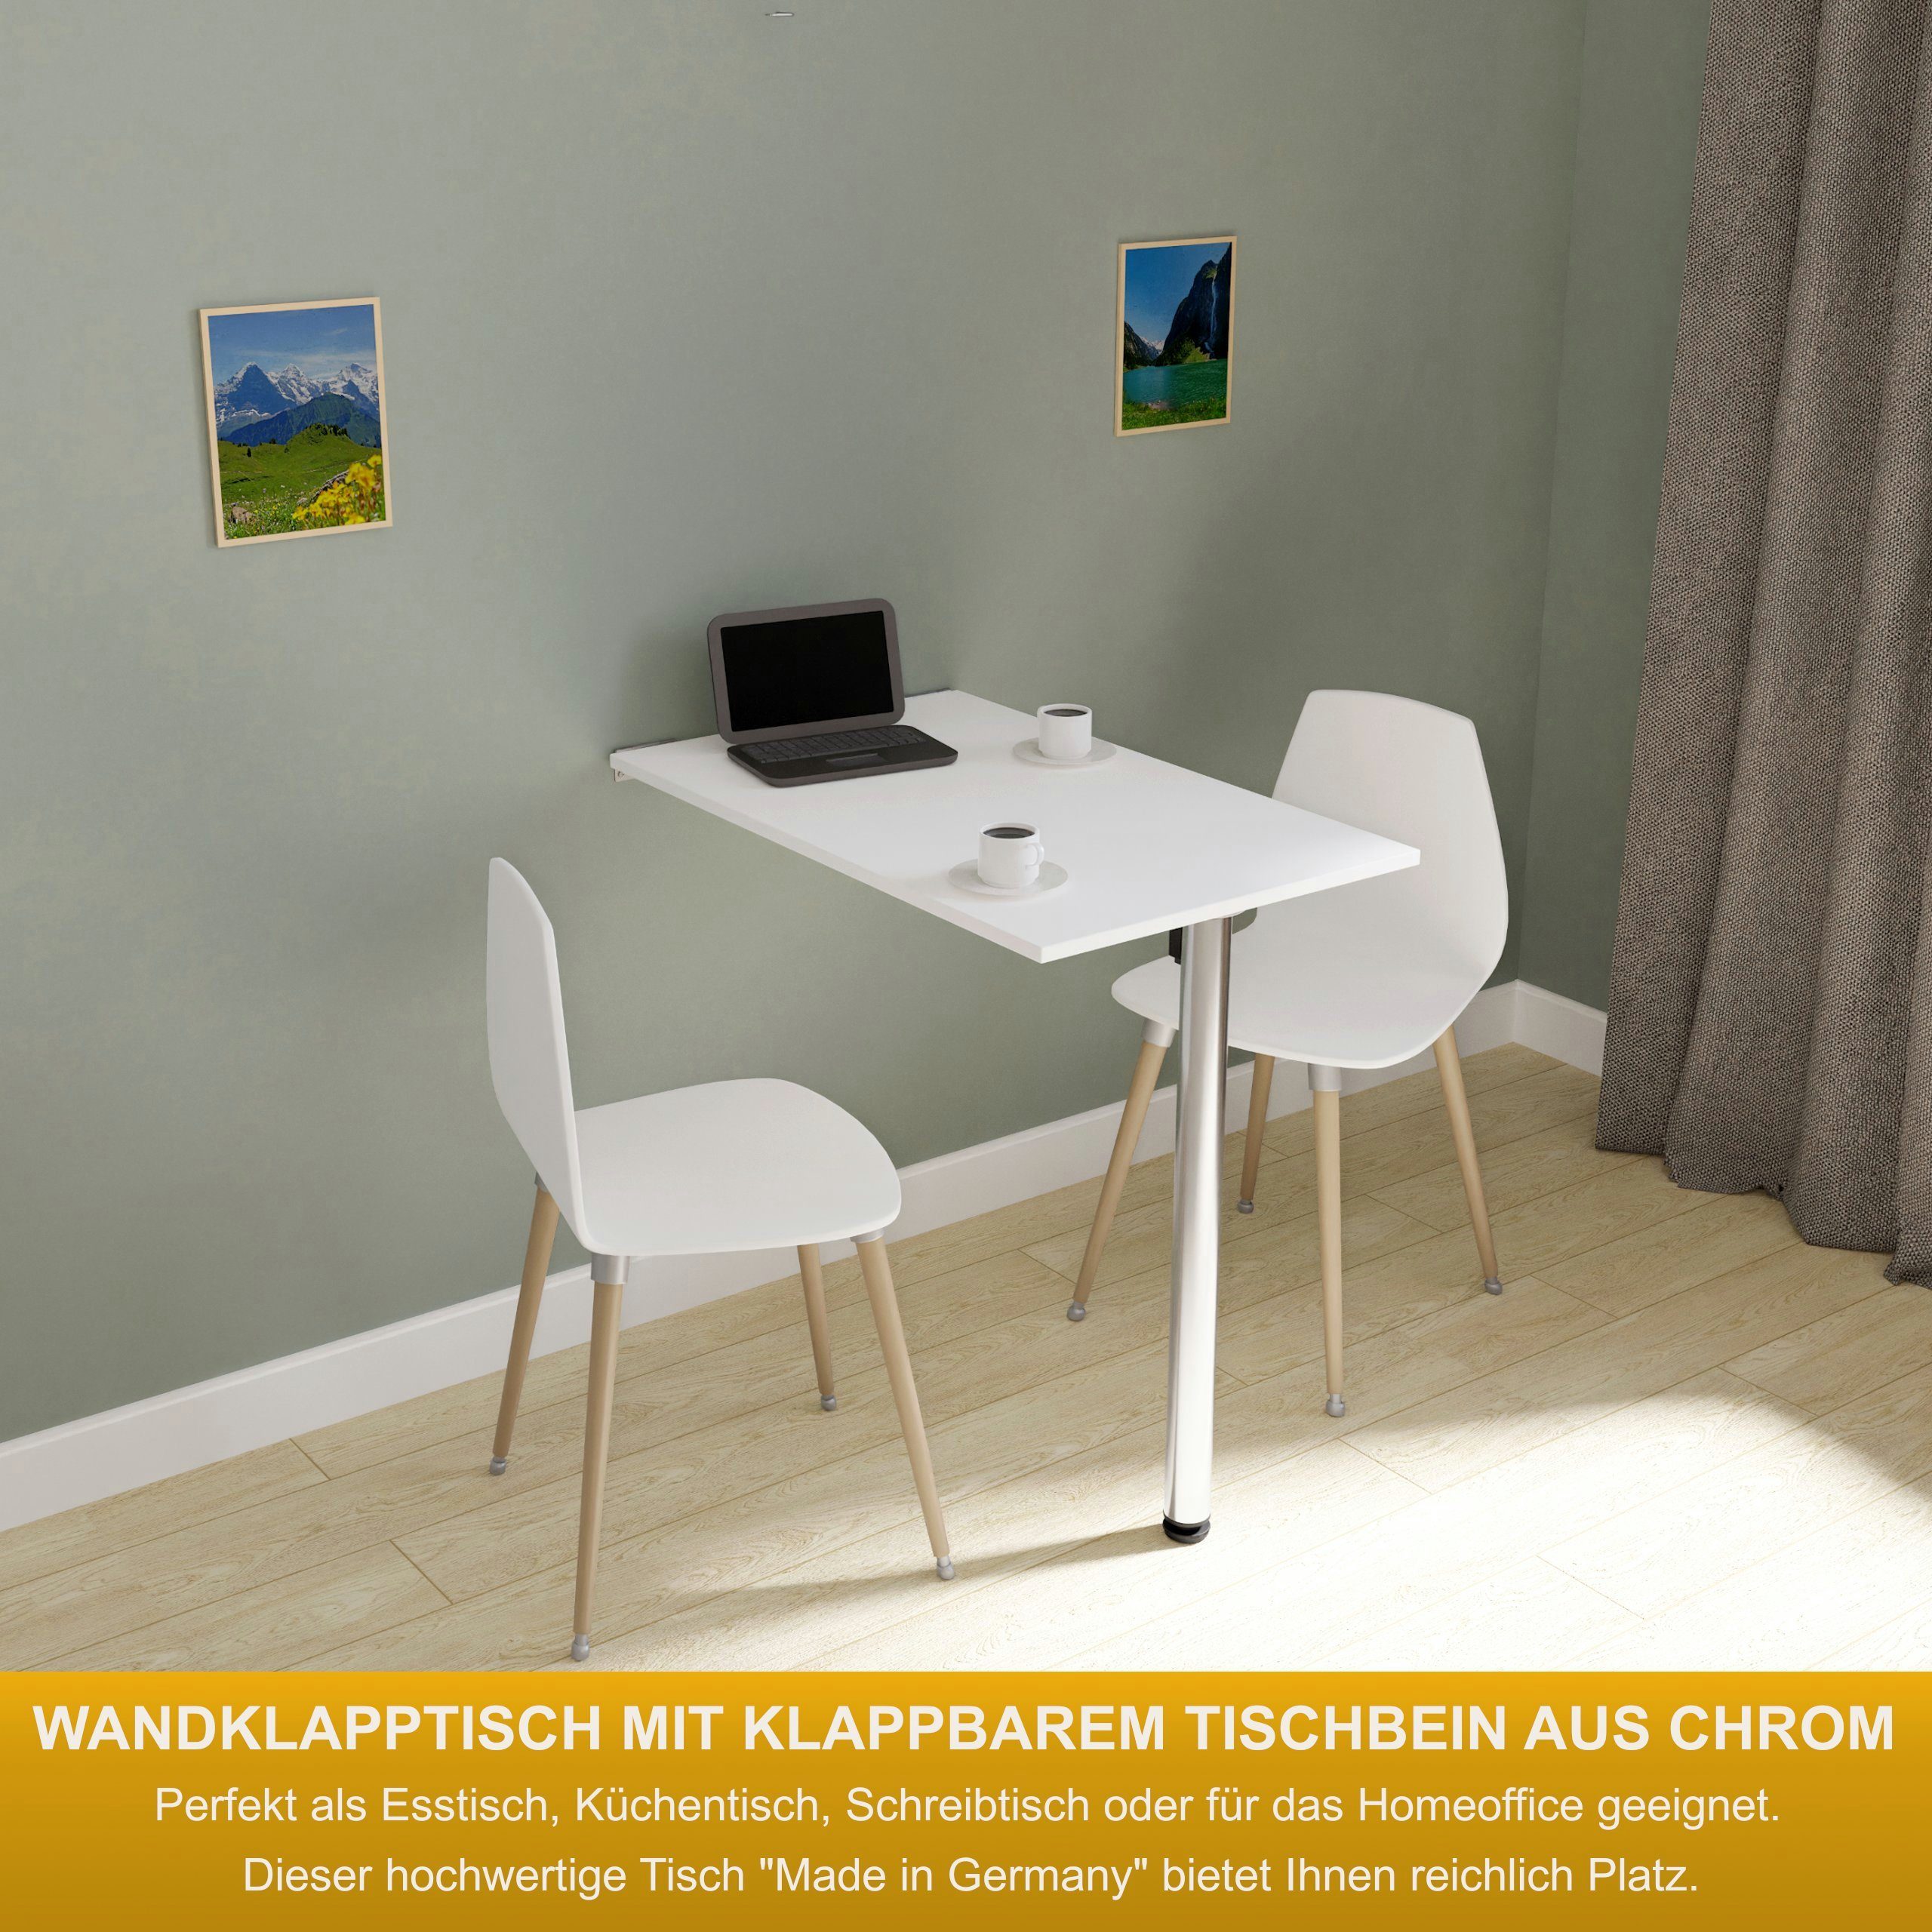 KDR Produktgestaltung Klapptisch 80x50 Wandklapptisch Esstisch Küchentisch  Schreibtisch Wand Tisch, Weiß